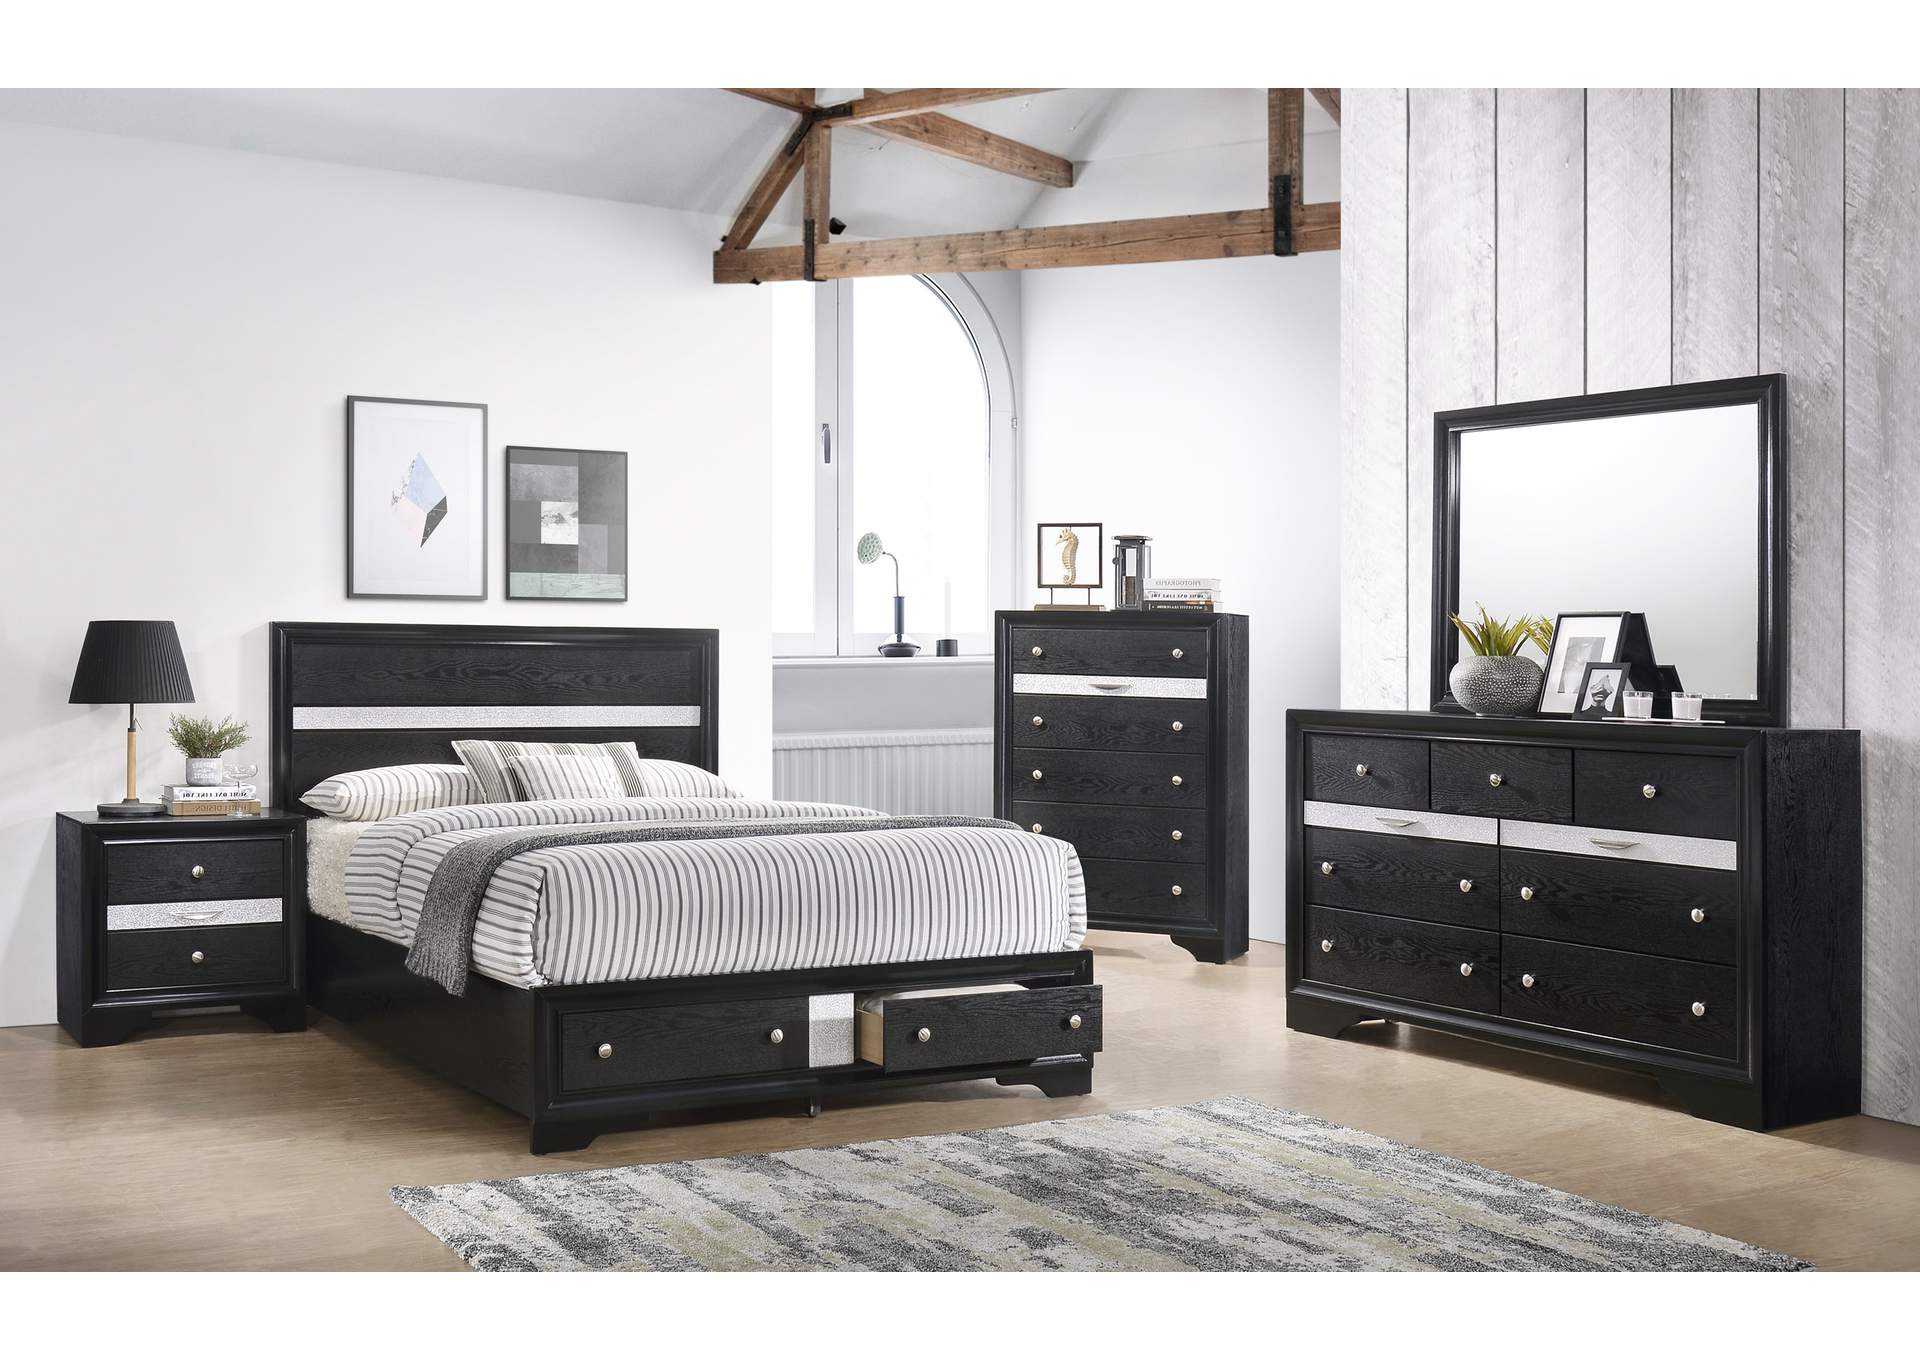 Regata Black Queen Bed W/ Dresser, Mirror, Chest